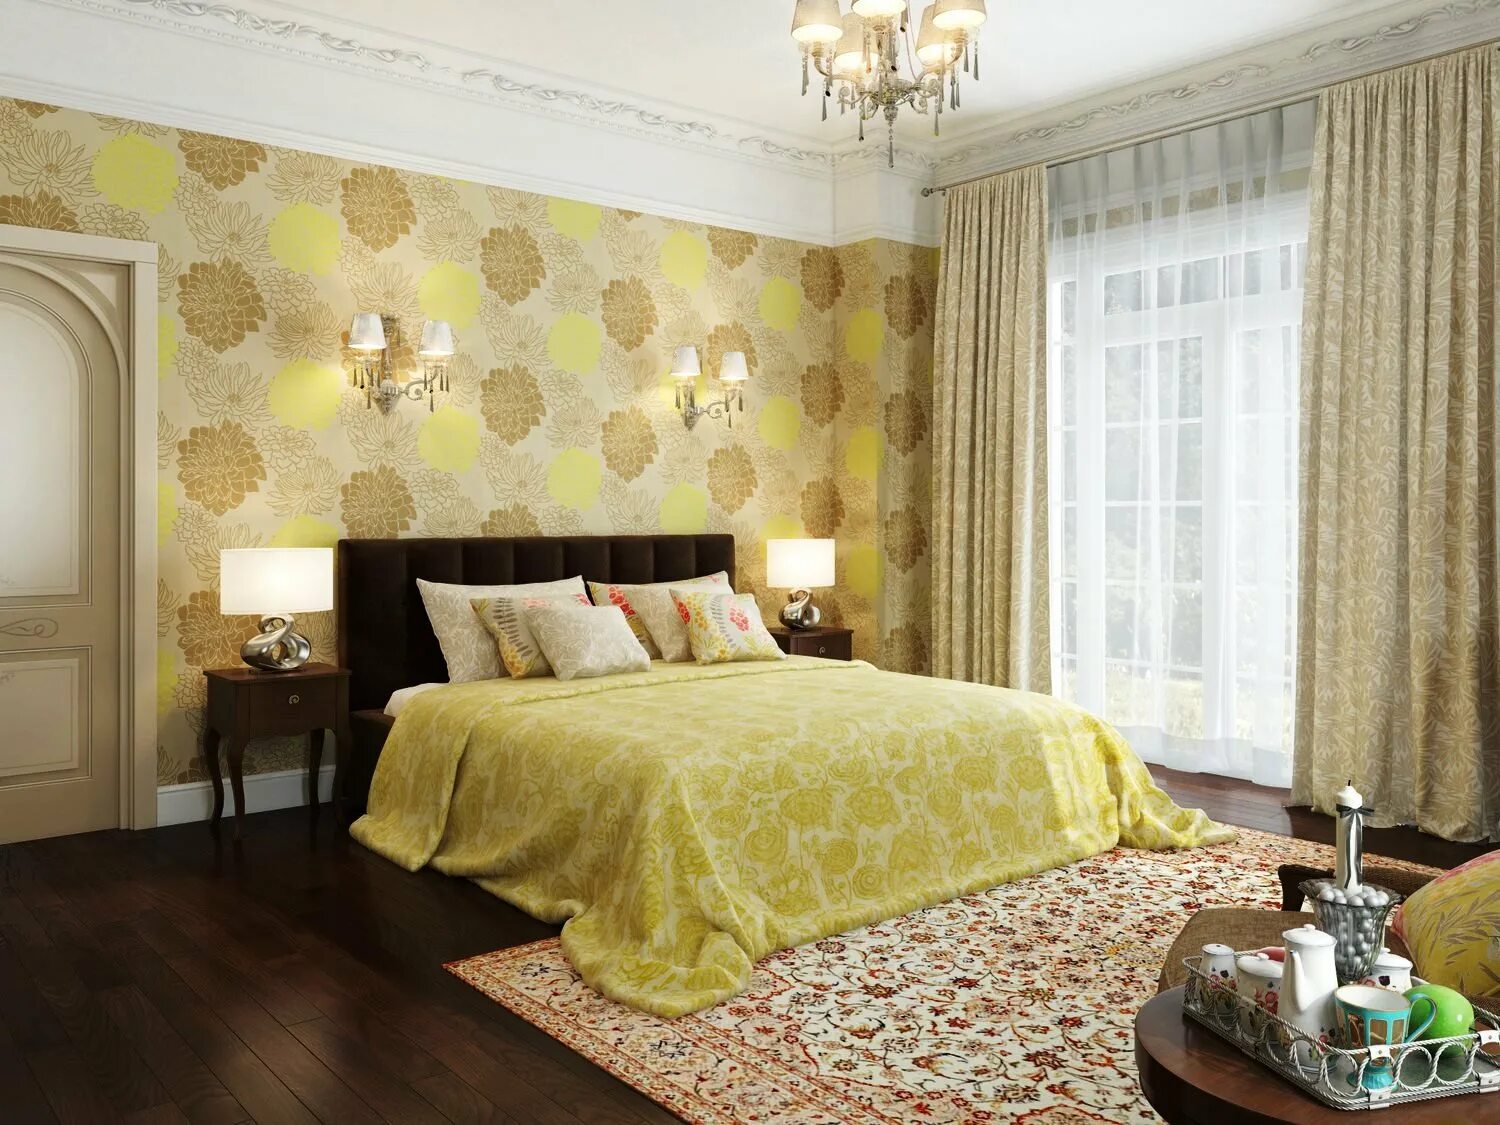 Обоями сторонами. Обои для спальни. Обои для спальни комбинированные. Спальня в золотисто желтых тонах. Жёлтые обои для стен в интерьере.